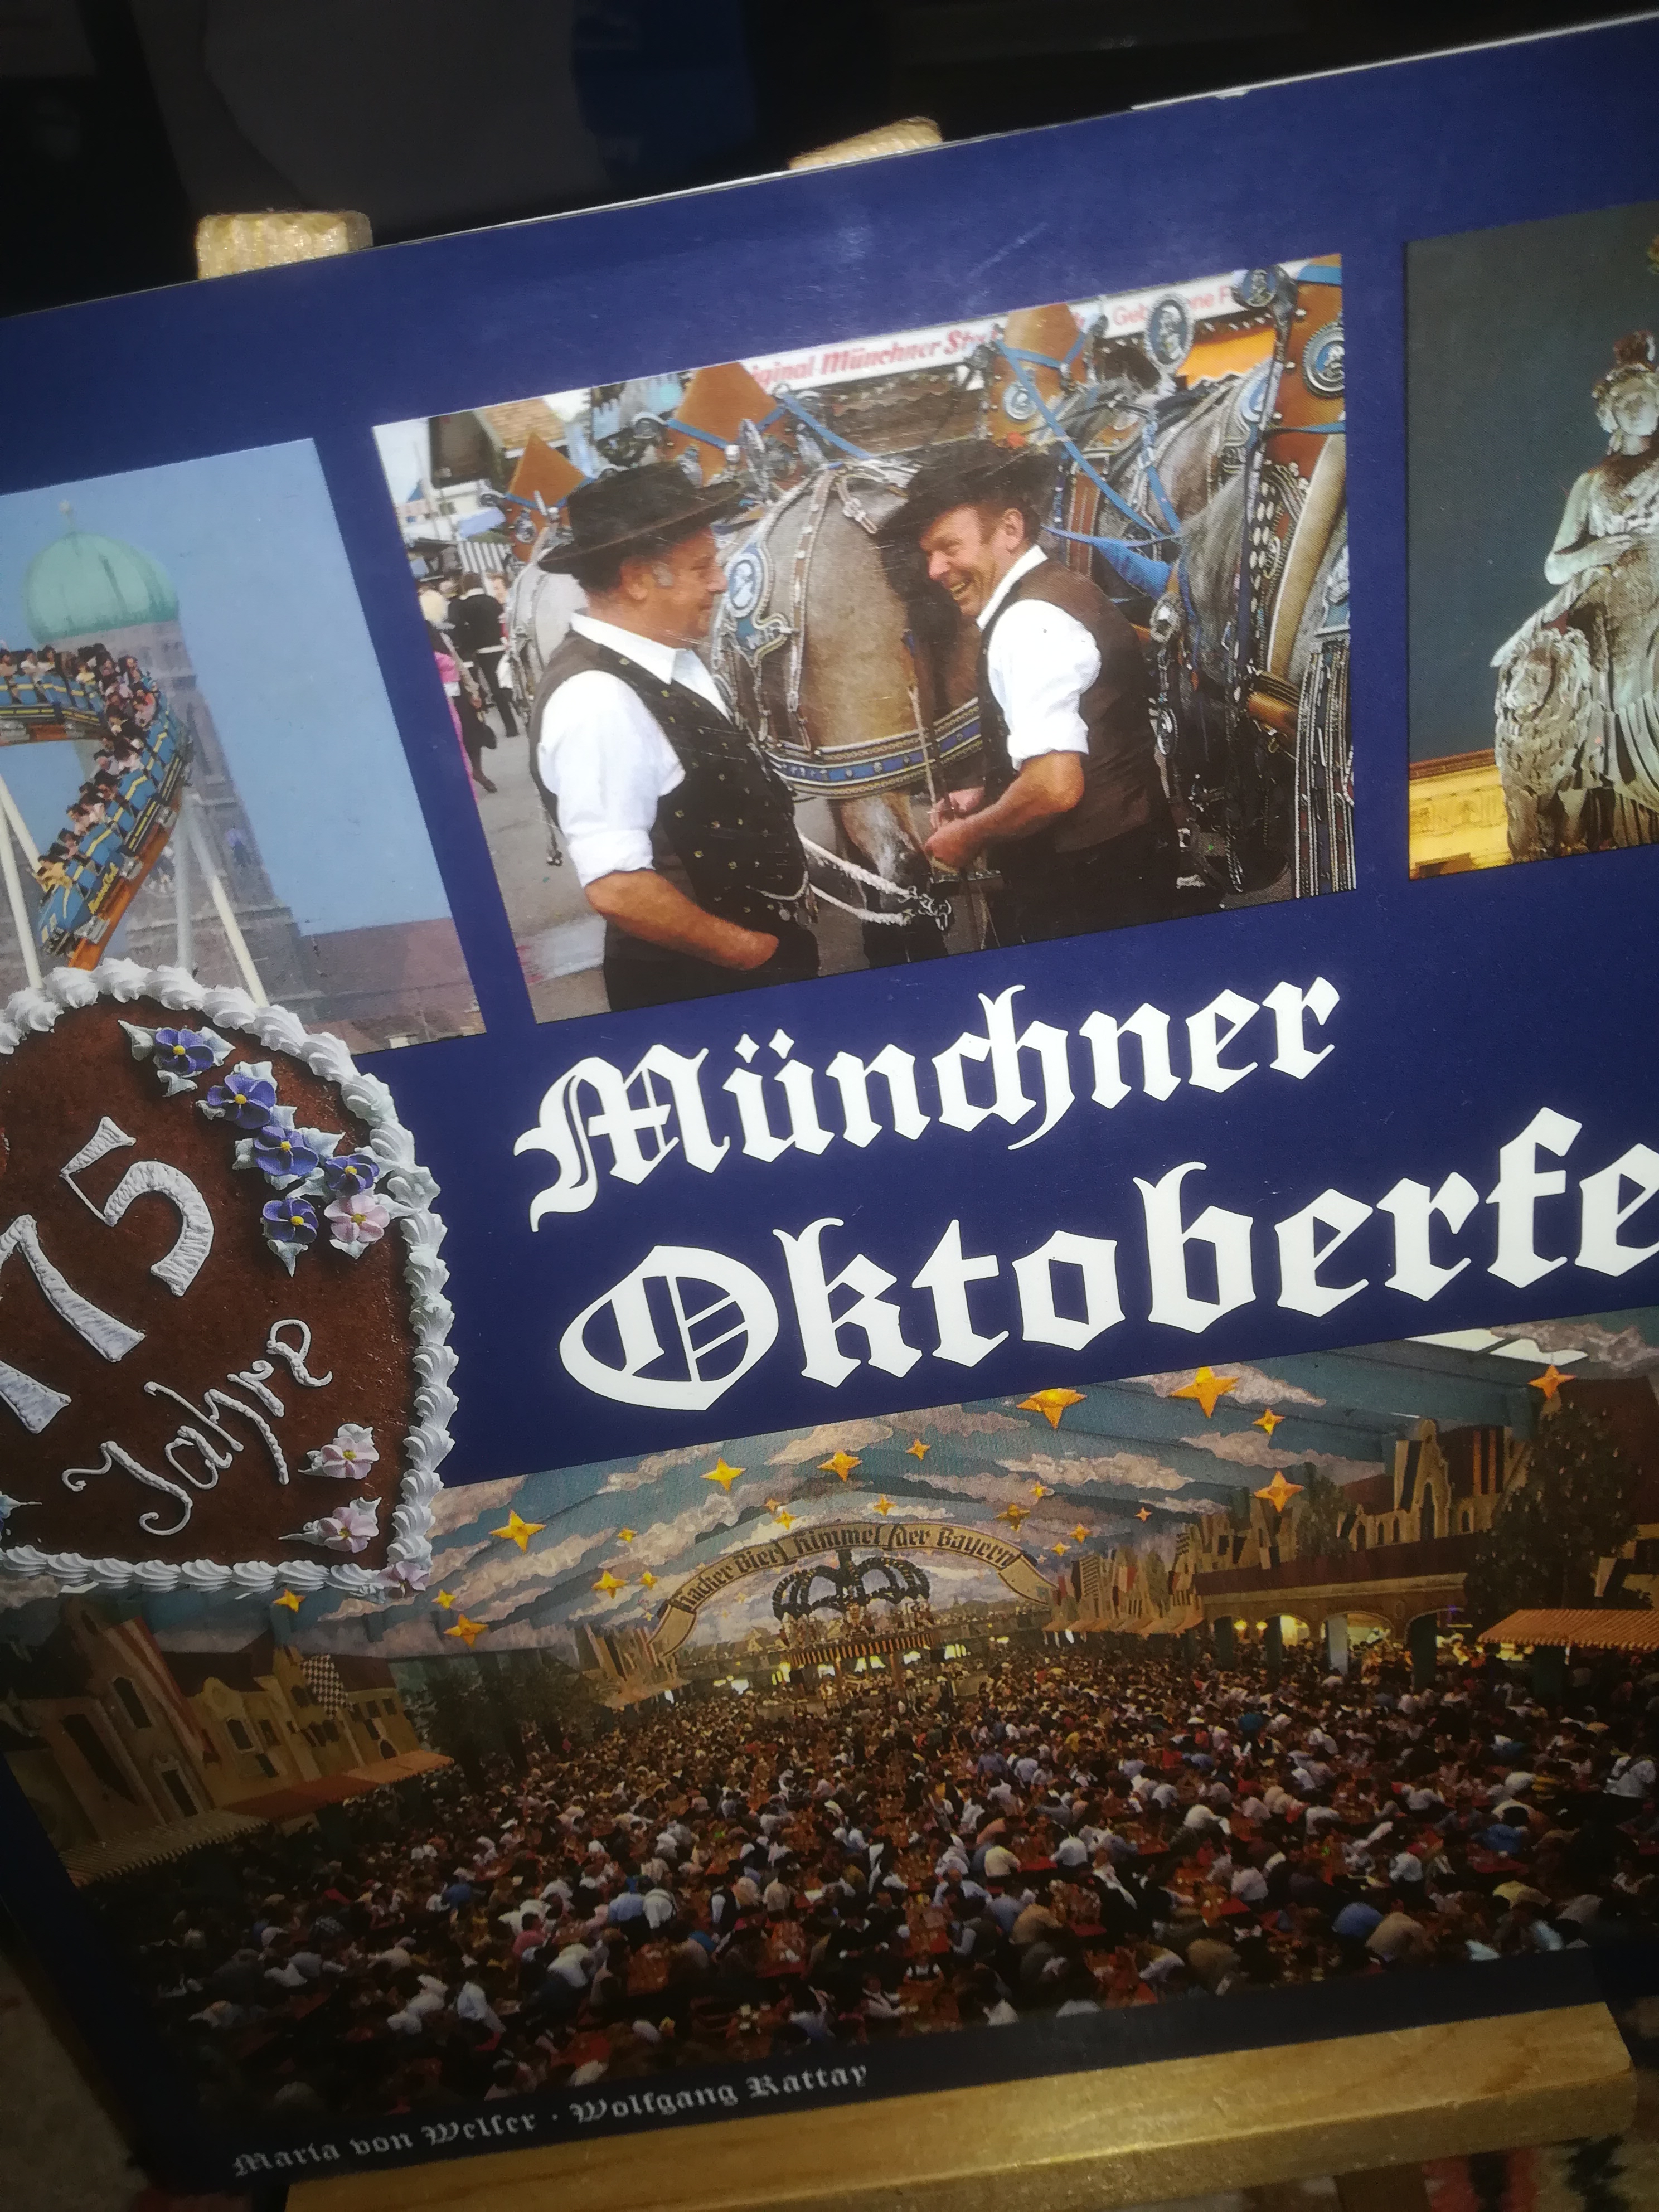 Münchner Oktoberfest - Welser Maria von, Rattay Wolfgang